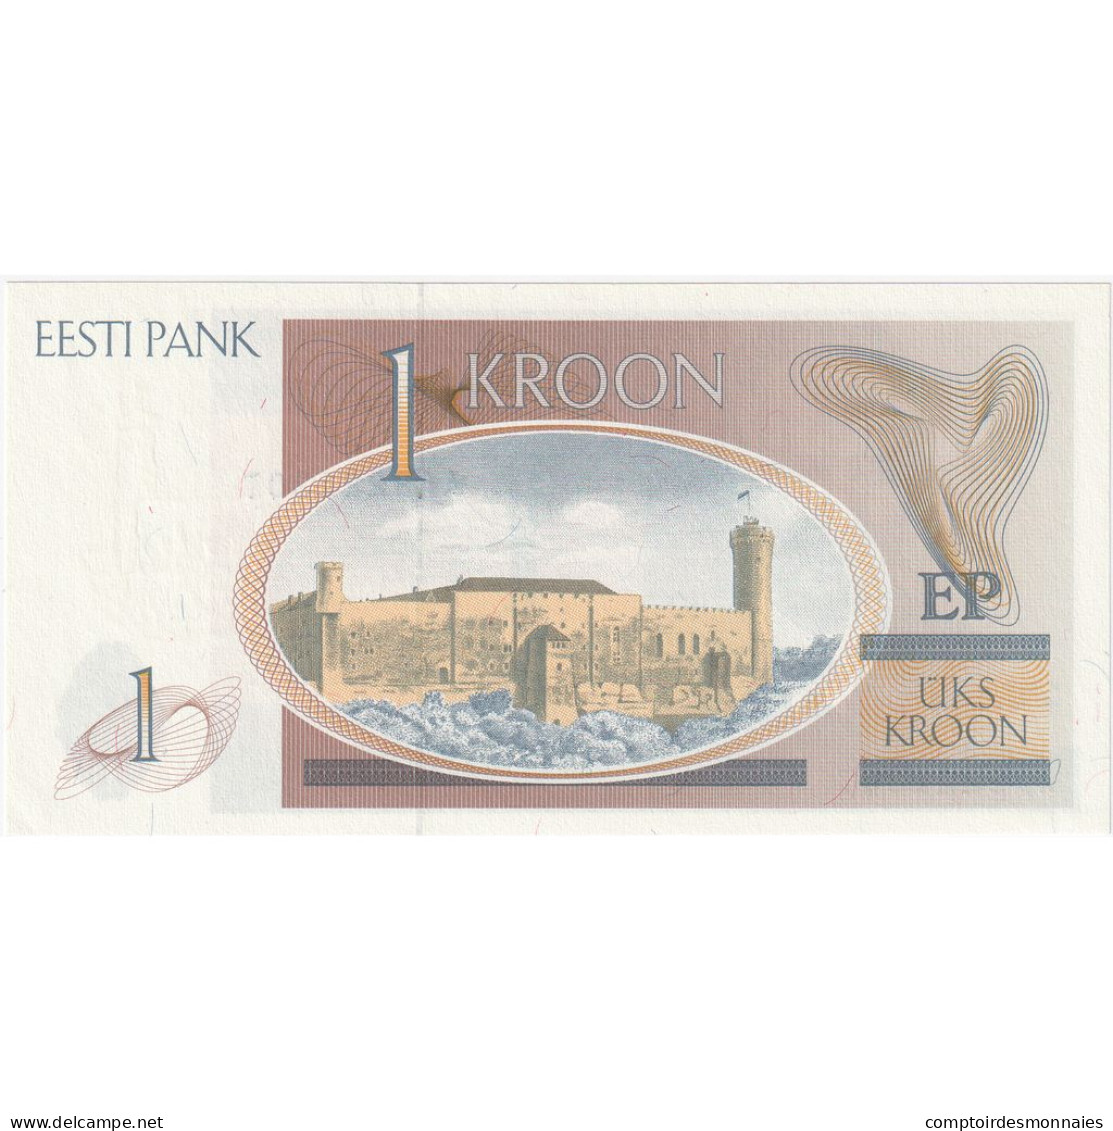 Estonie, 1 Kroon, 1992, KM:69a, NEUF - Estonie